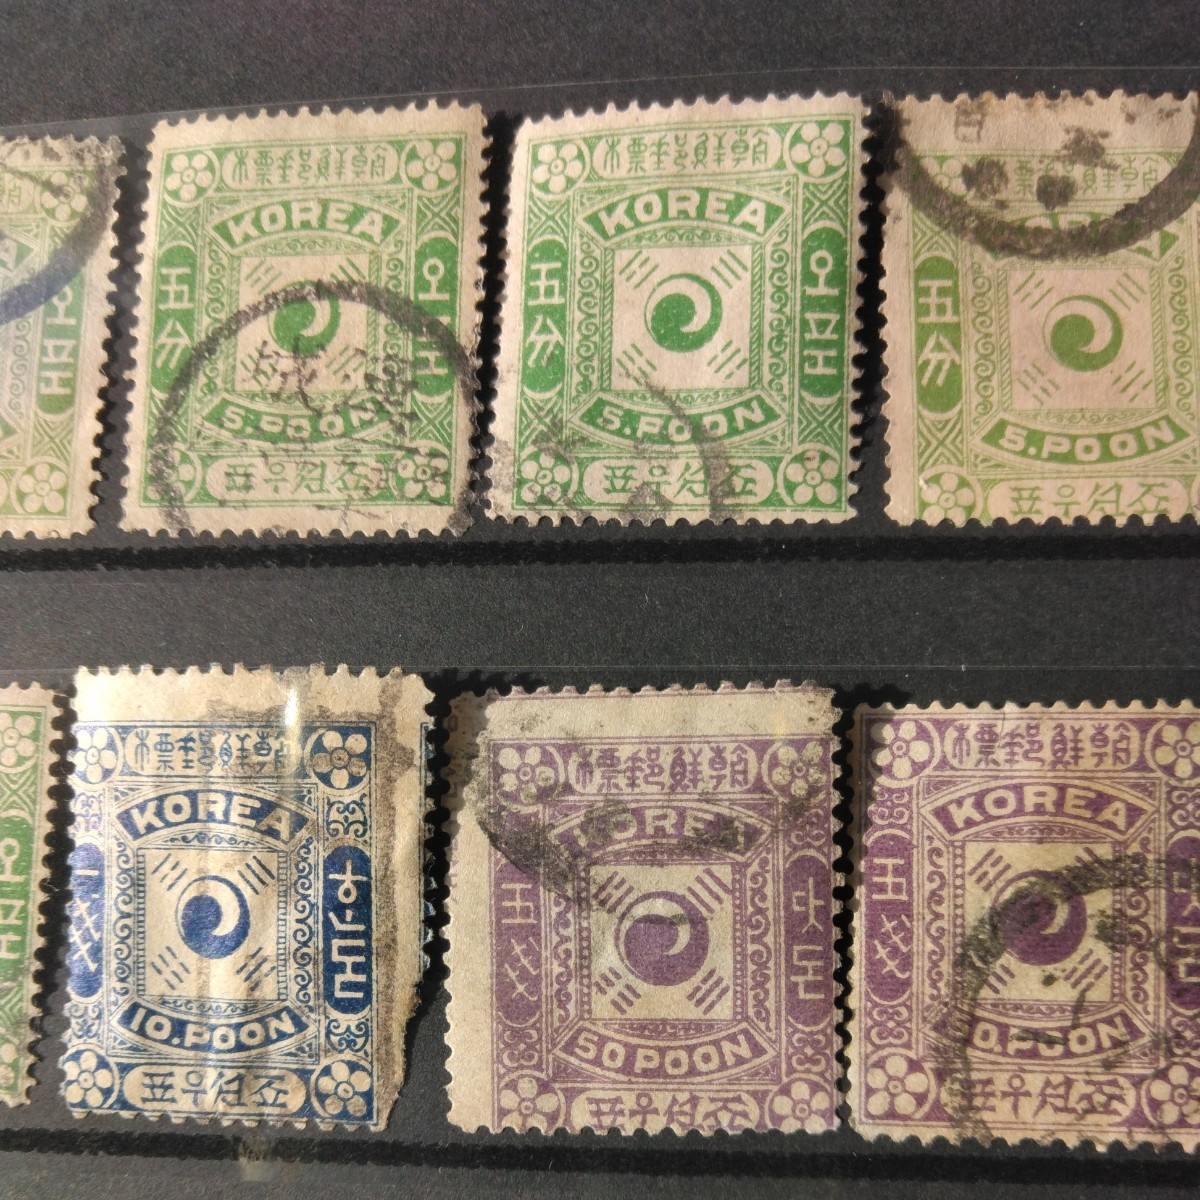 朝鮮郵標が14枚、大韓帝国郵票が25枚あります。長年しまって置いた朝鮮か？韓国切手です。やけ、しみ、汚れ等があります。写真で、判断して_画像3